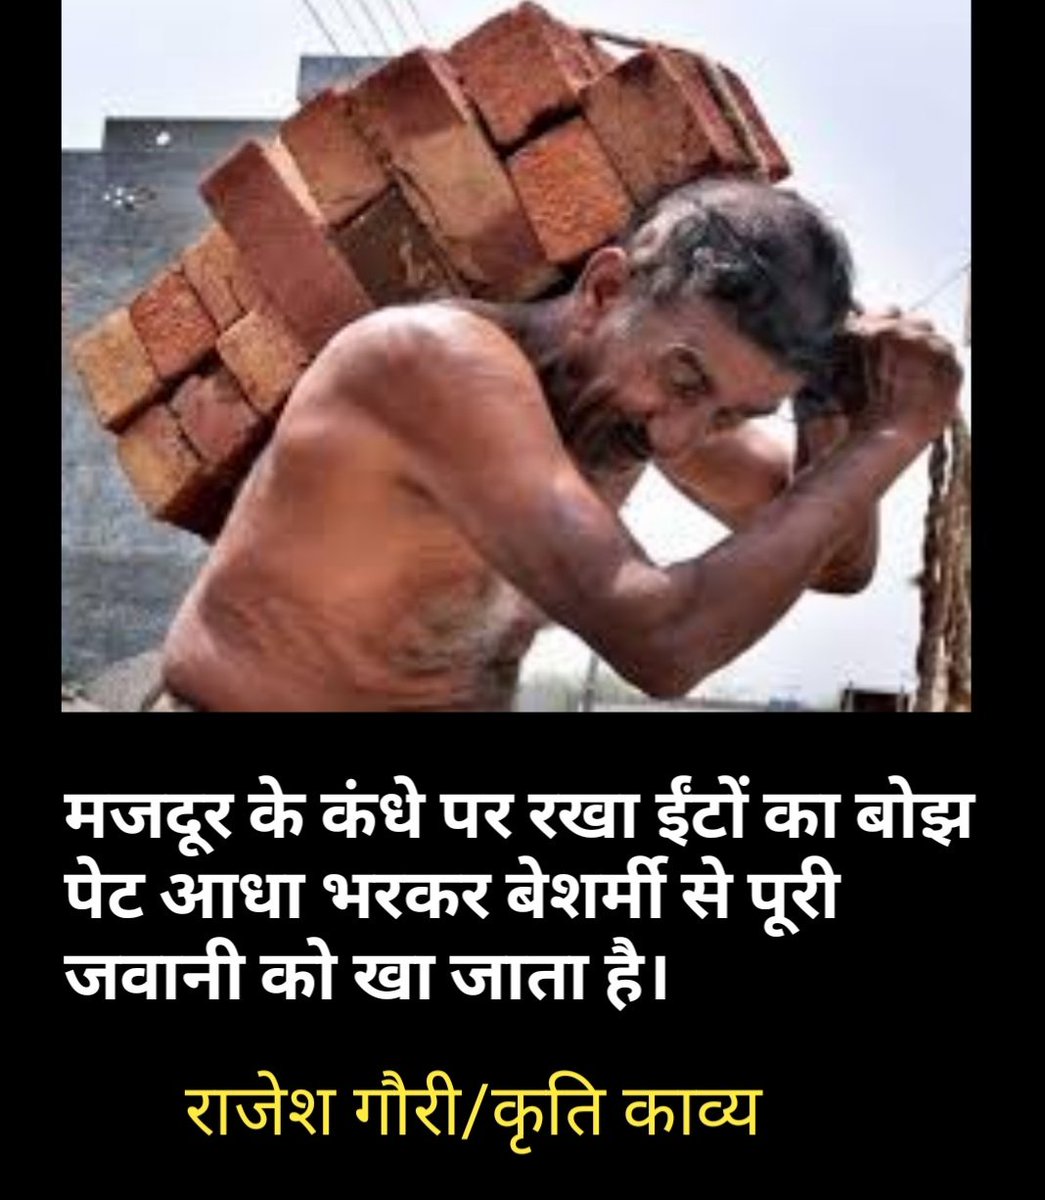 मजदूर के कंधे पर रखा ईंटों का बोझ पेट आधा भरकर बेशर्मी से पूरी जवानी को खा जाता है 

राजेश गौरी🌷
@RajeshGaurii
#मजदूरदिवस